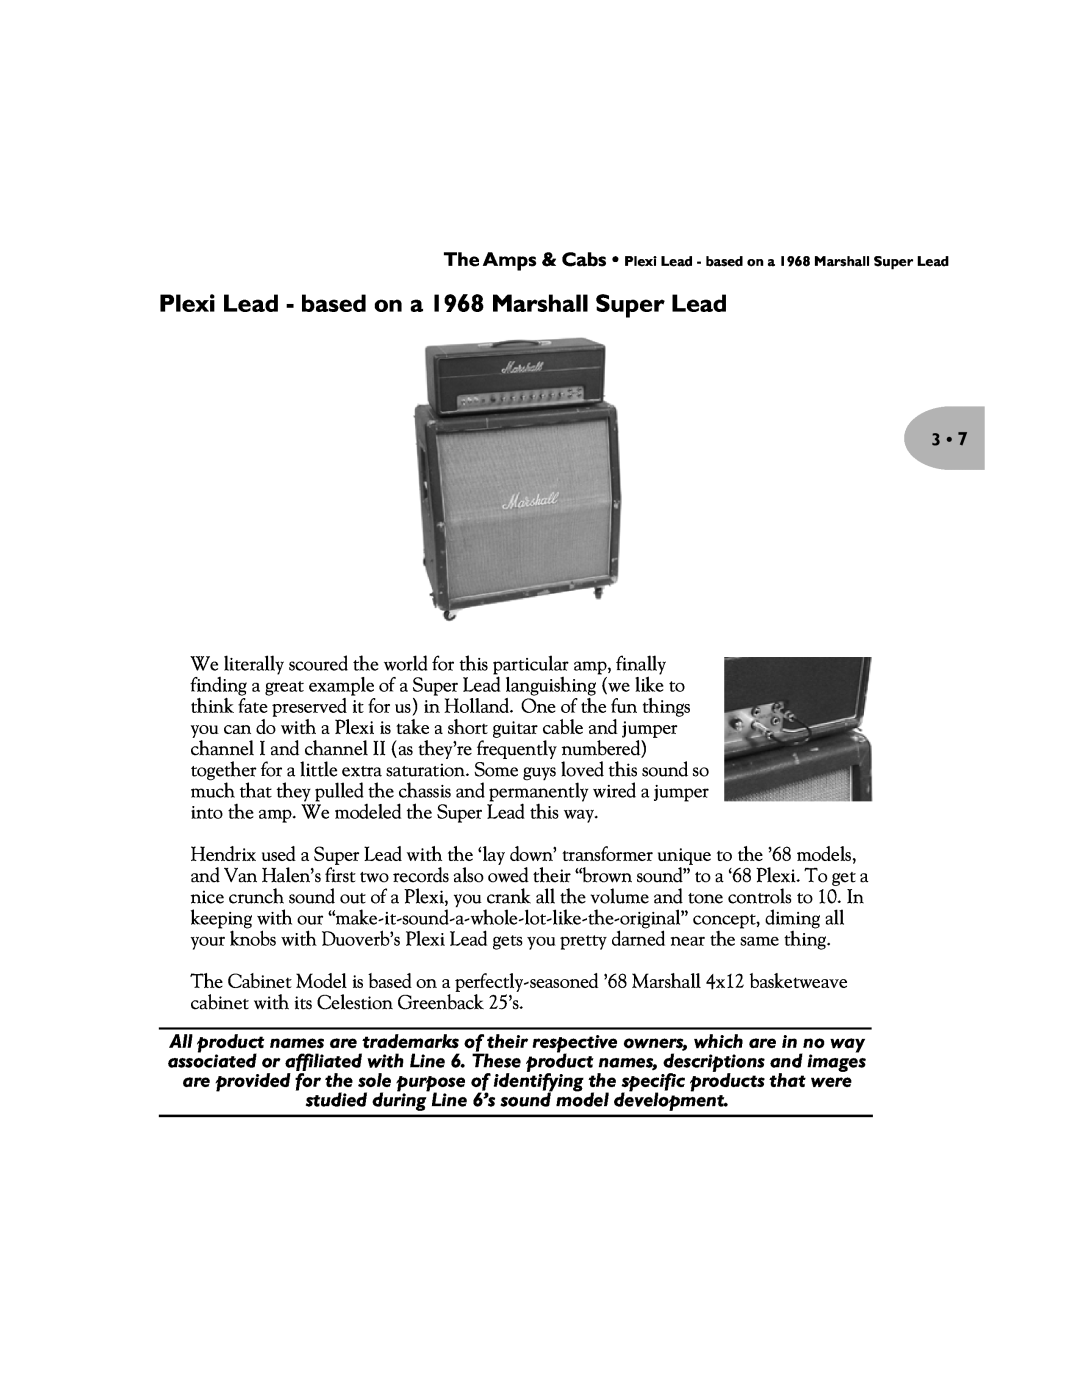 Line 6 Pilot's Handbook manual Plexi Lead - based on a 1968 Marshall Super Lead 